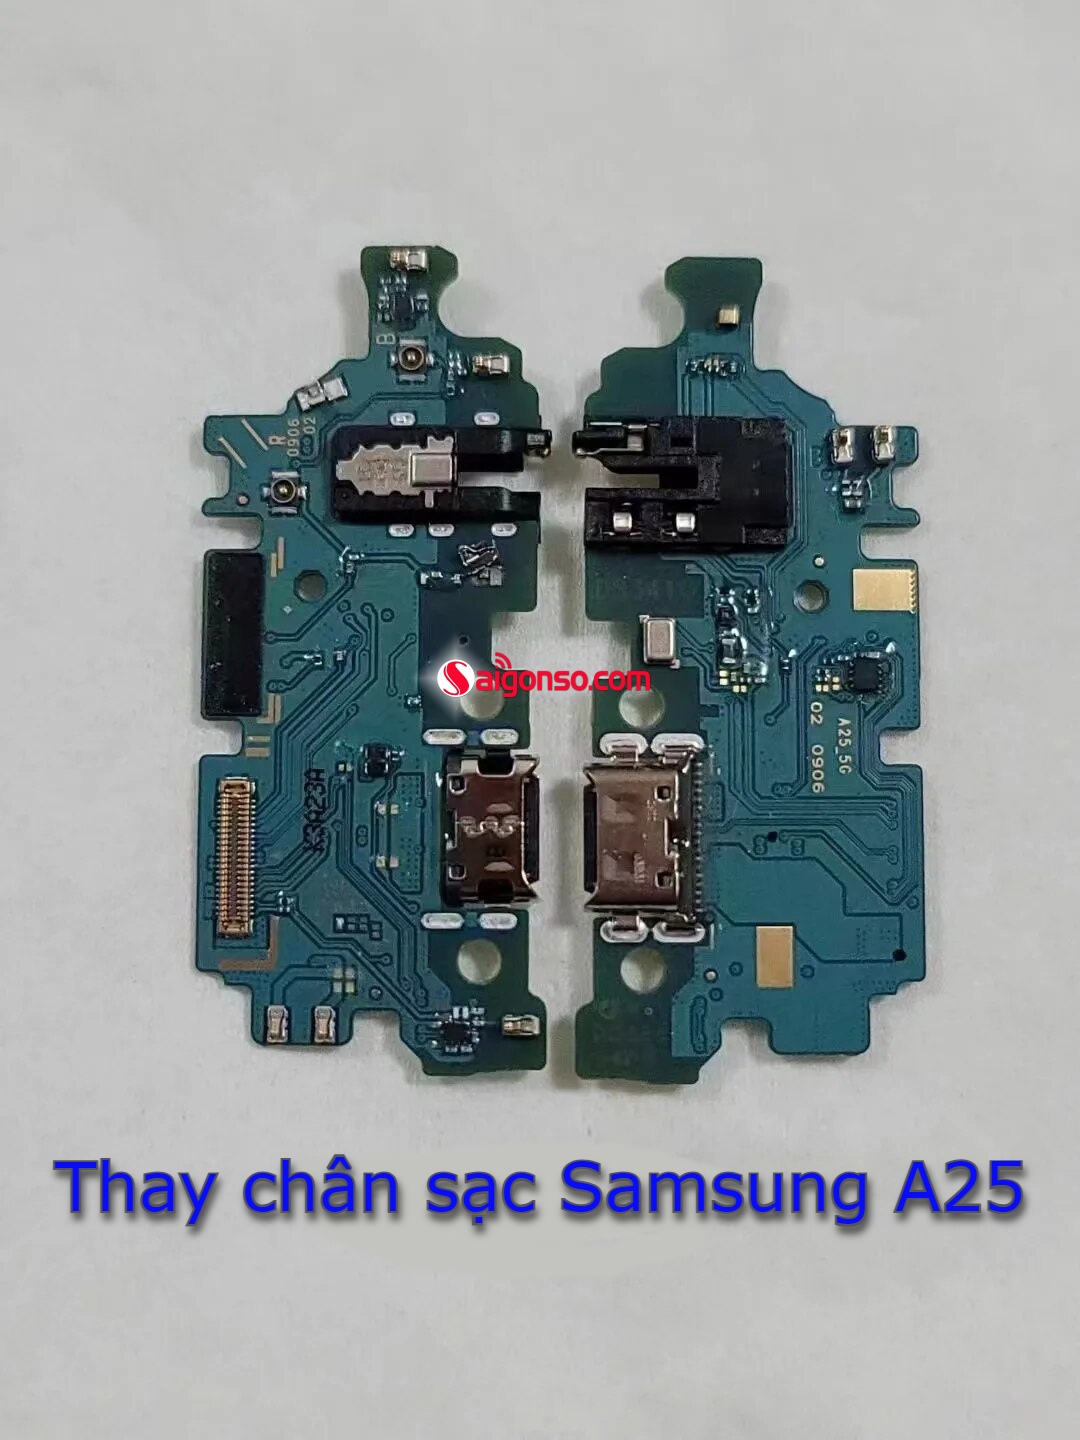 thay chân sạc Samsung A25